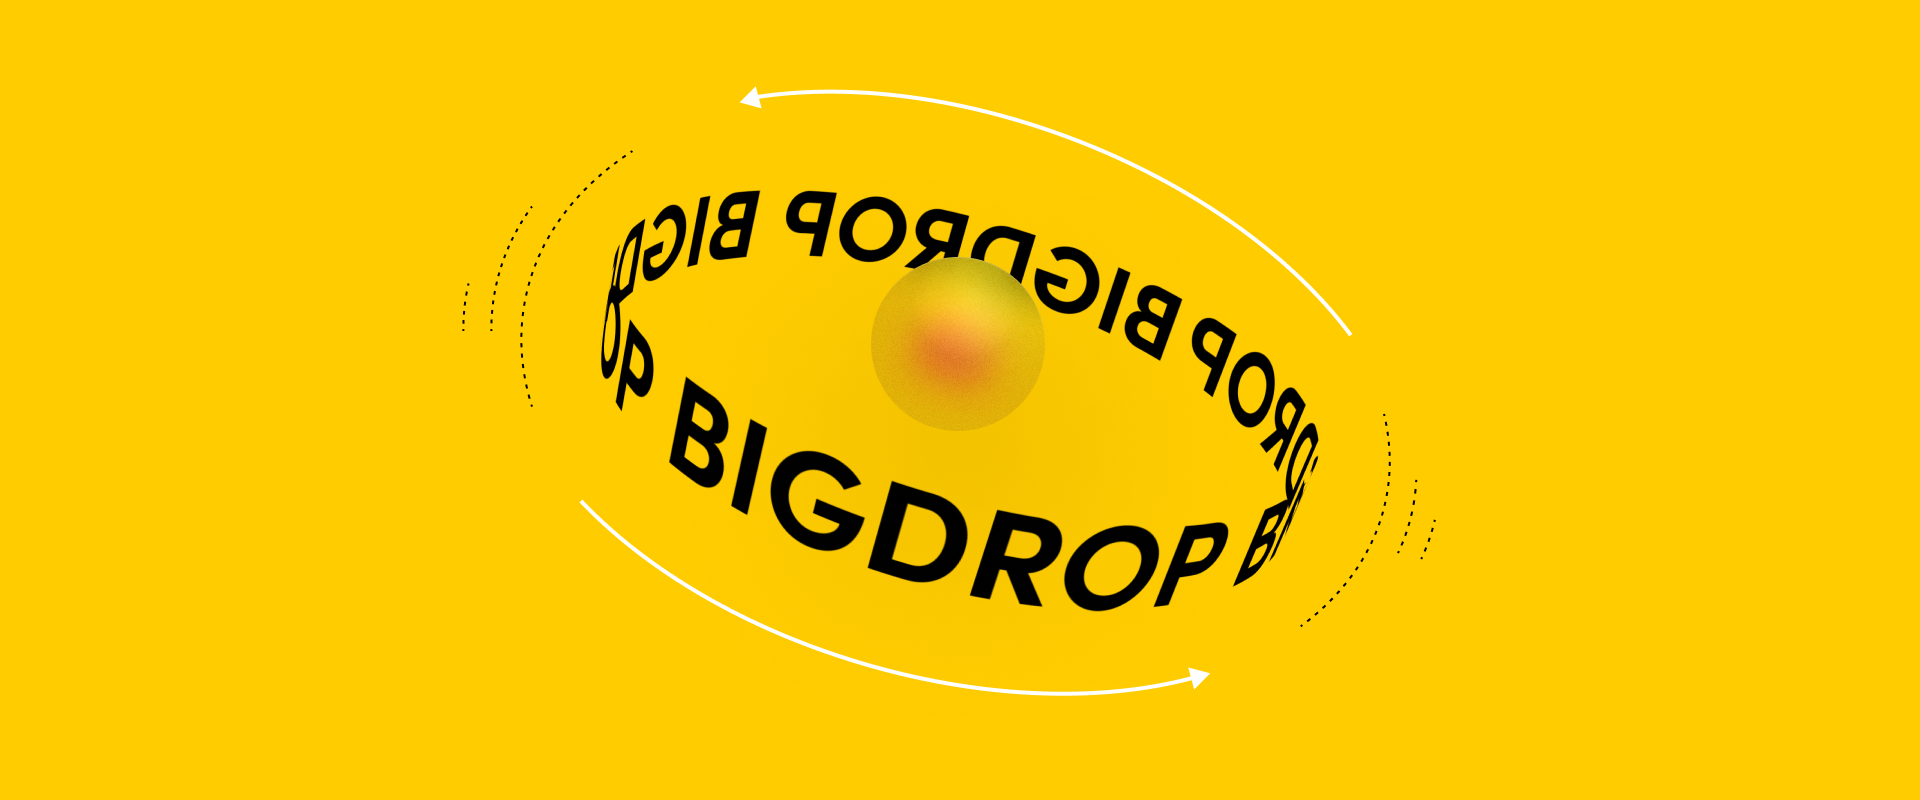 kinetic type big drop inc